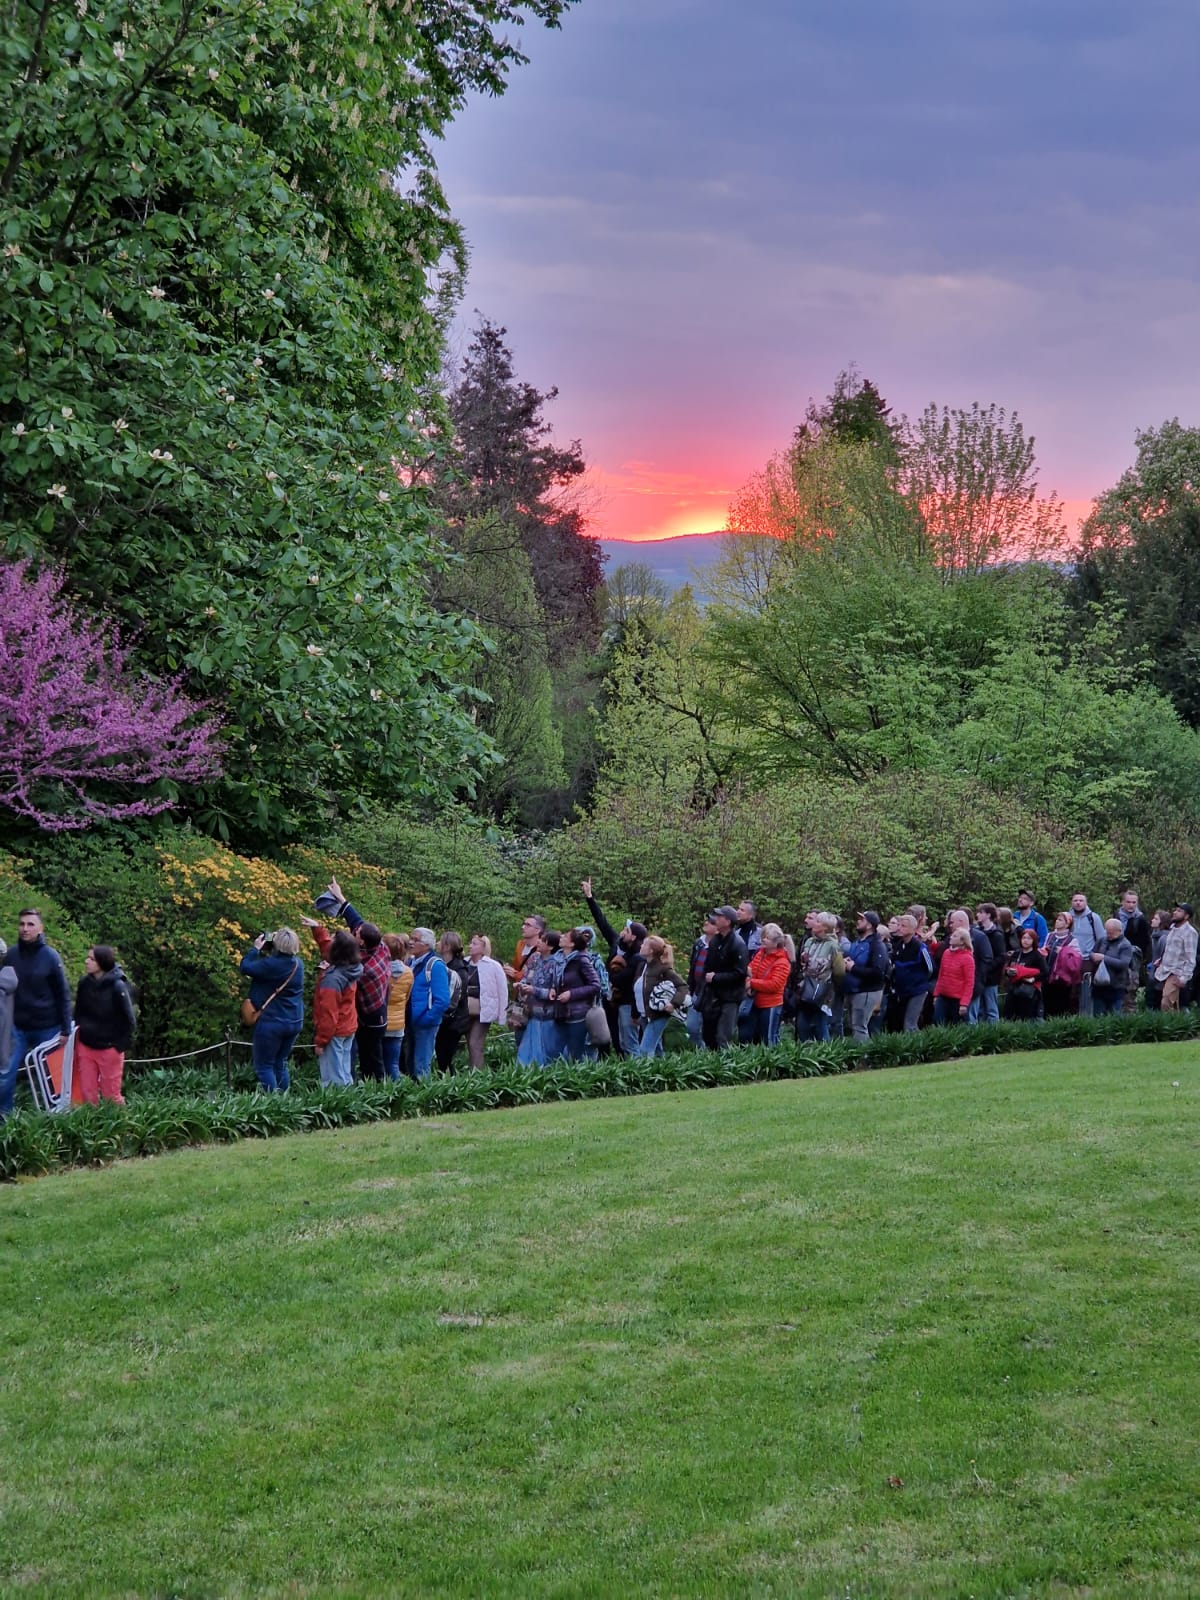 Uczestnicy spacerujący po ogrodzie o zachodzie słońca